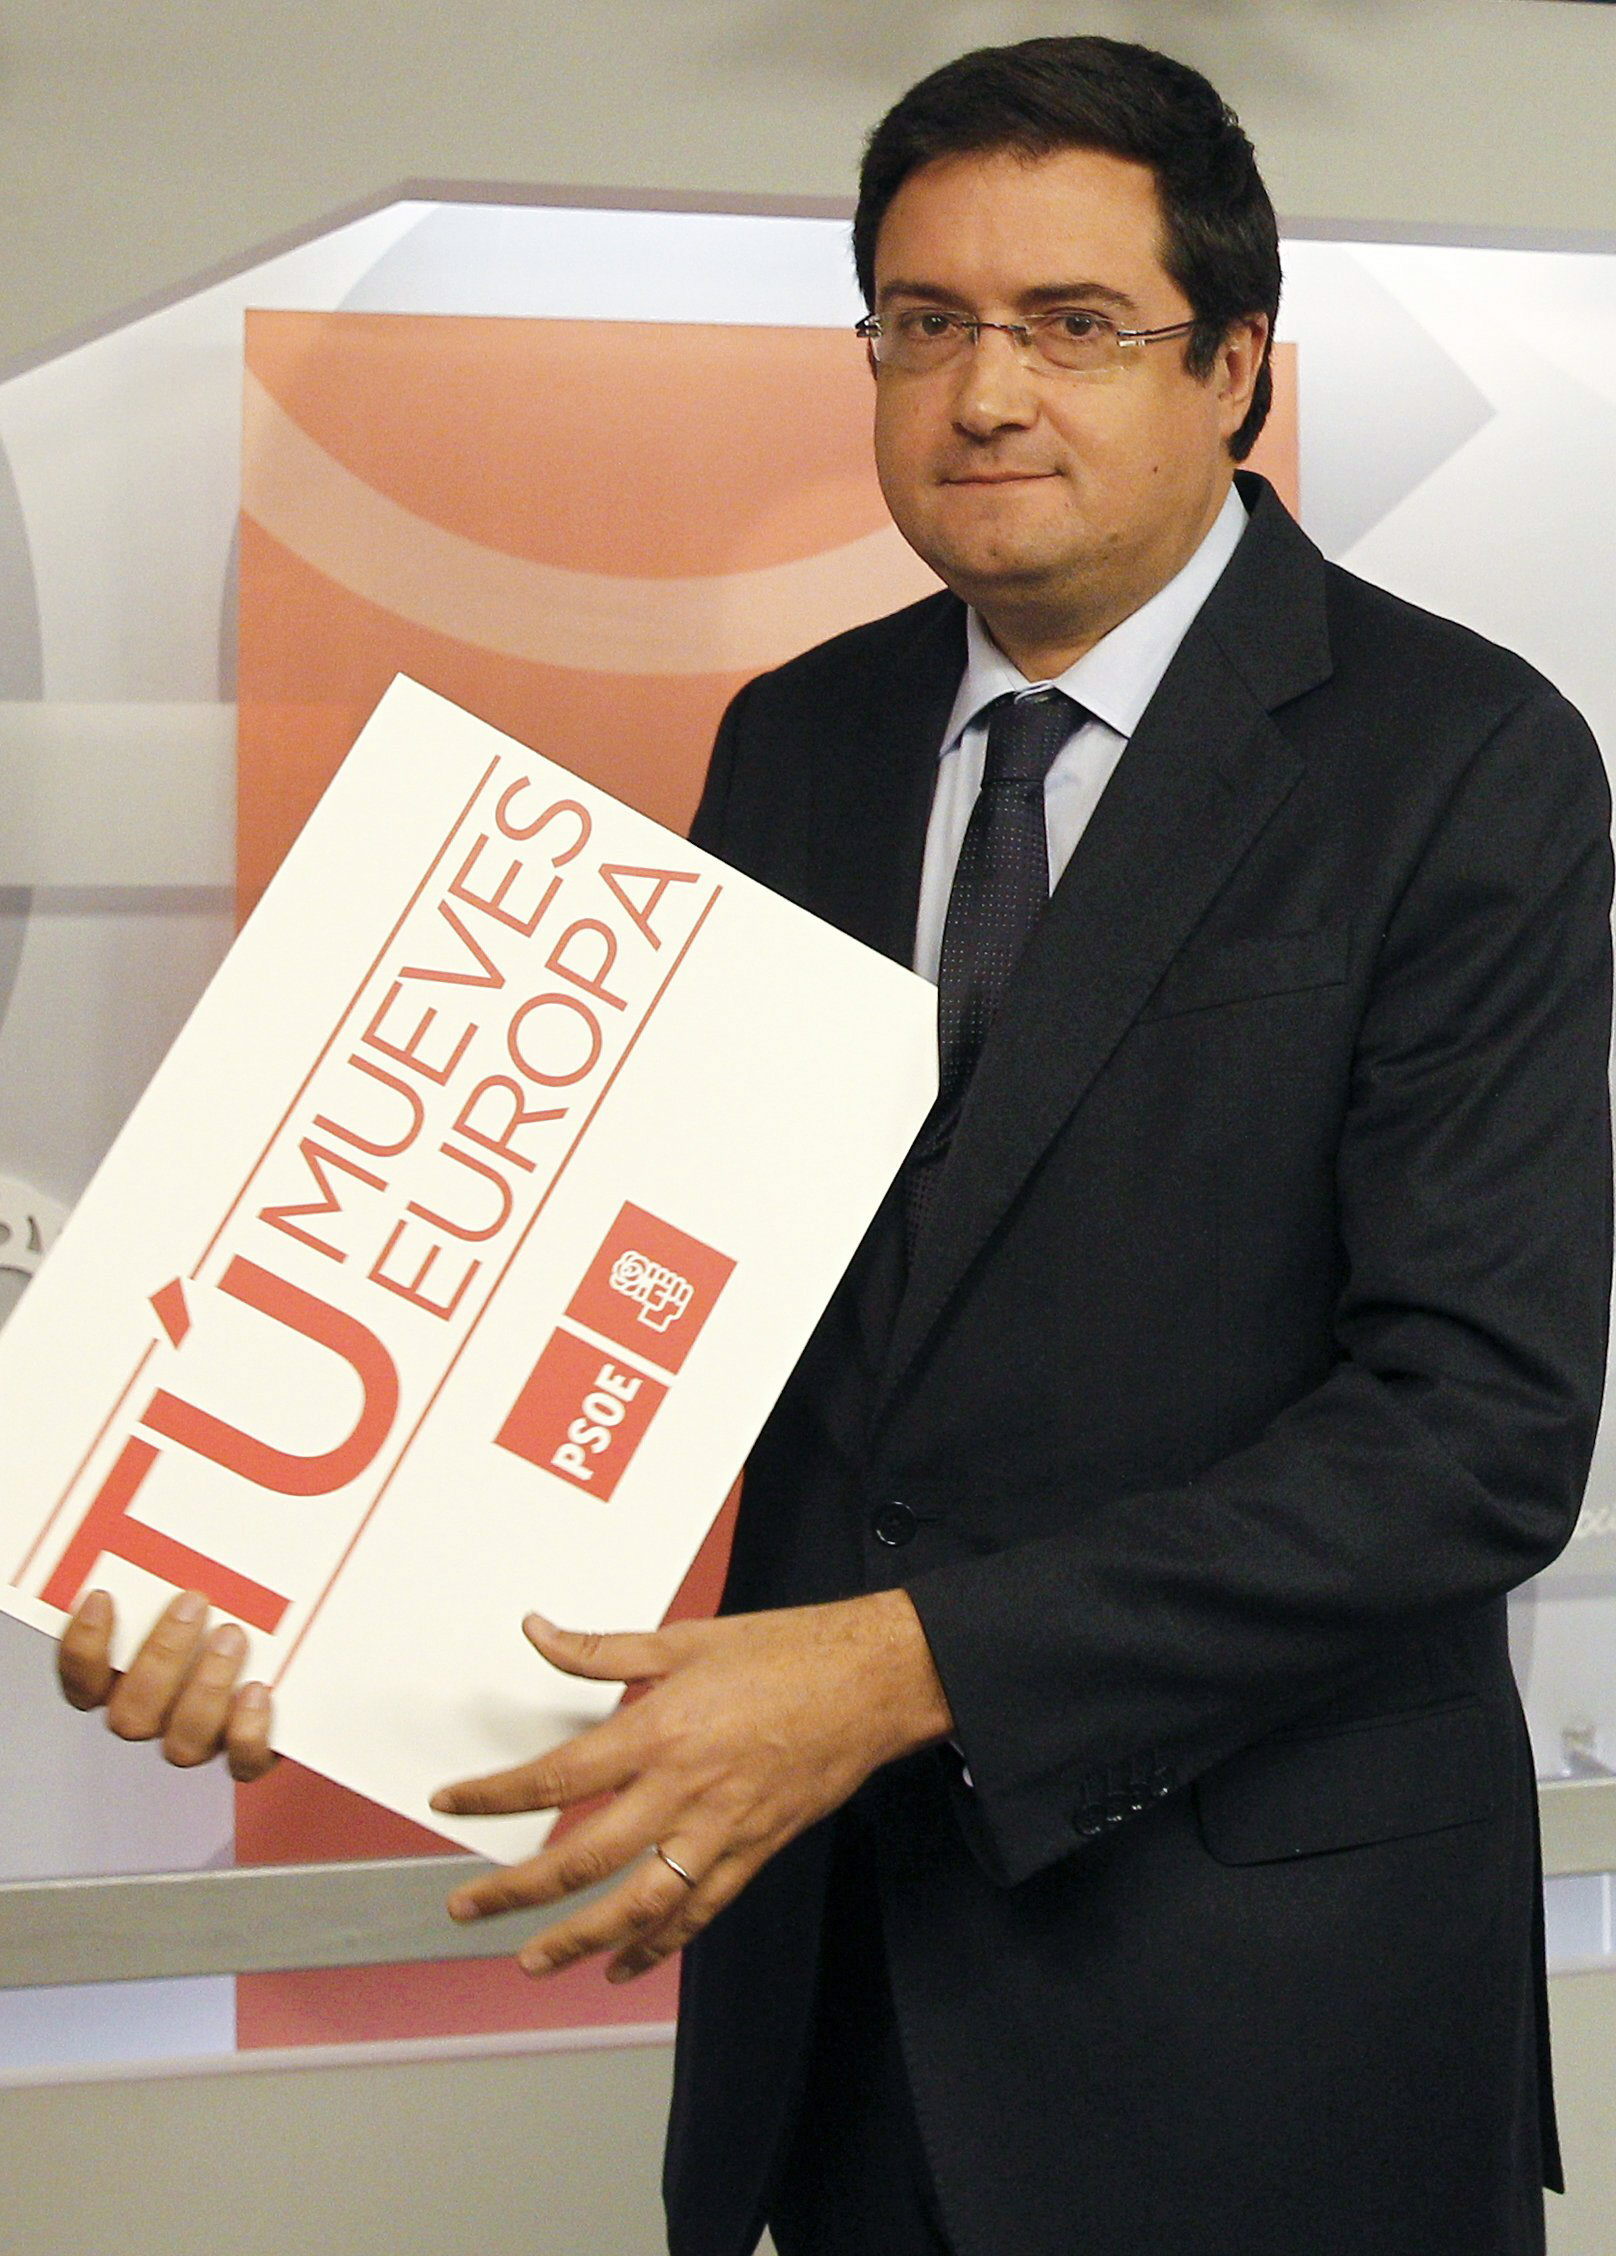 El PSOE hará la primera campaña sin vallas bajo el lema «Tú mueves Europa»